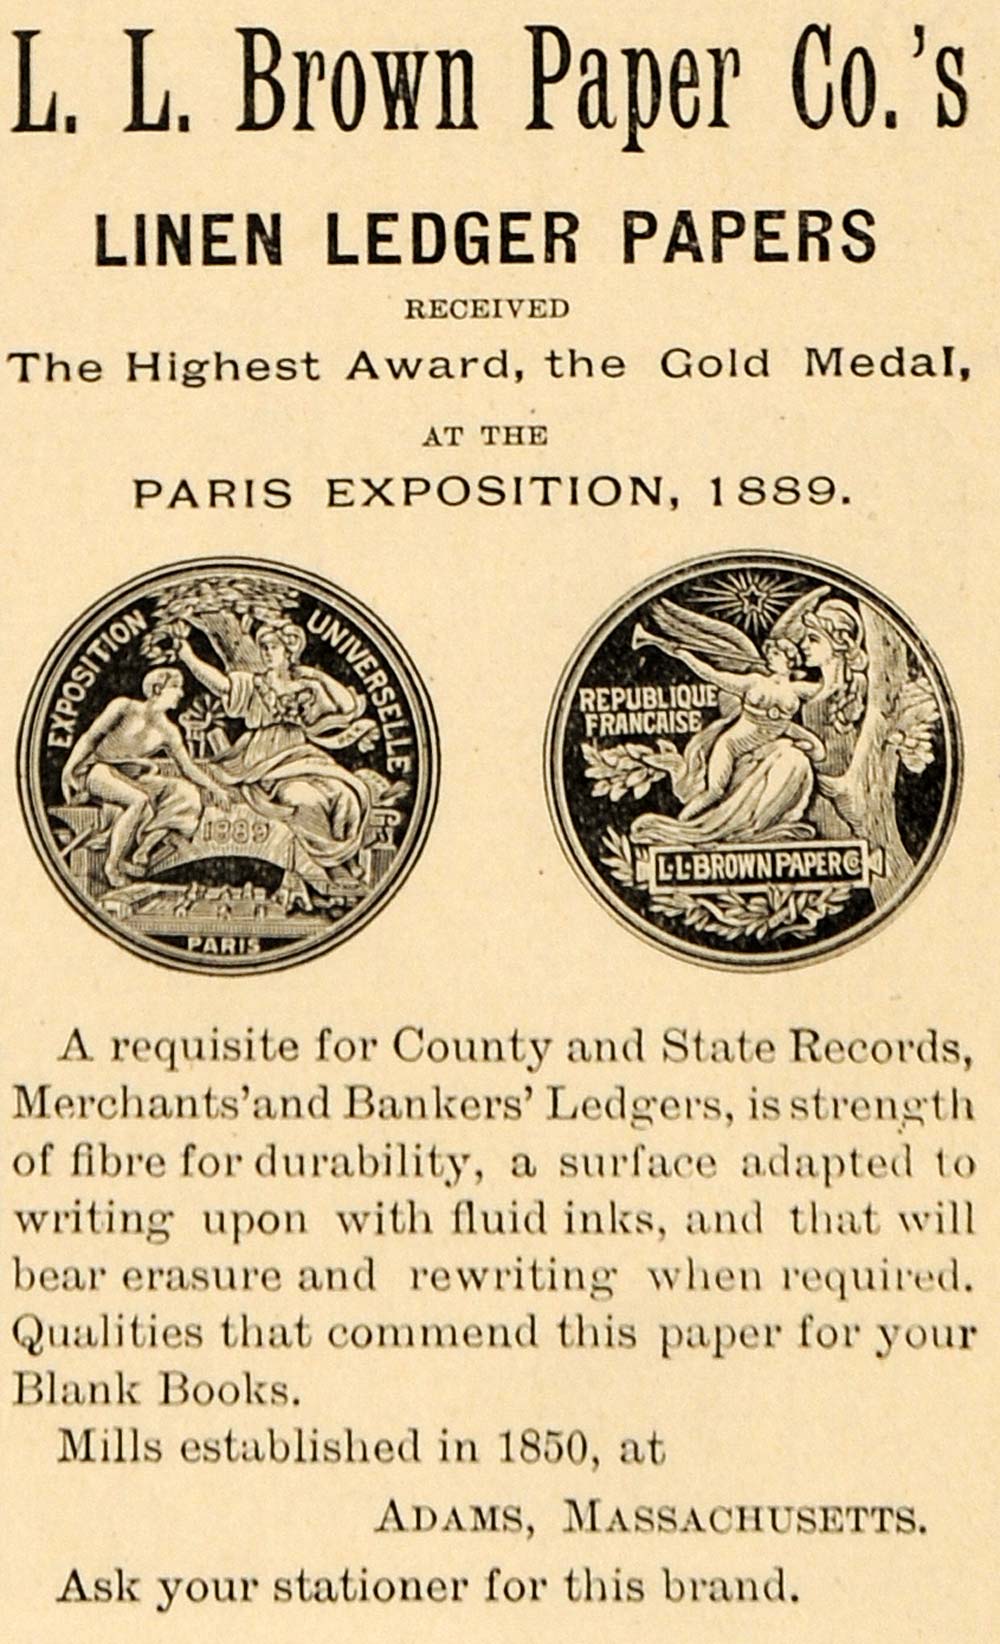 1891 Ad Linen Ledger Papers L. L. Brown Wins Paris Expo - ORIGINAL TFO1